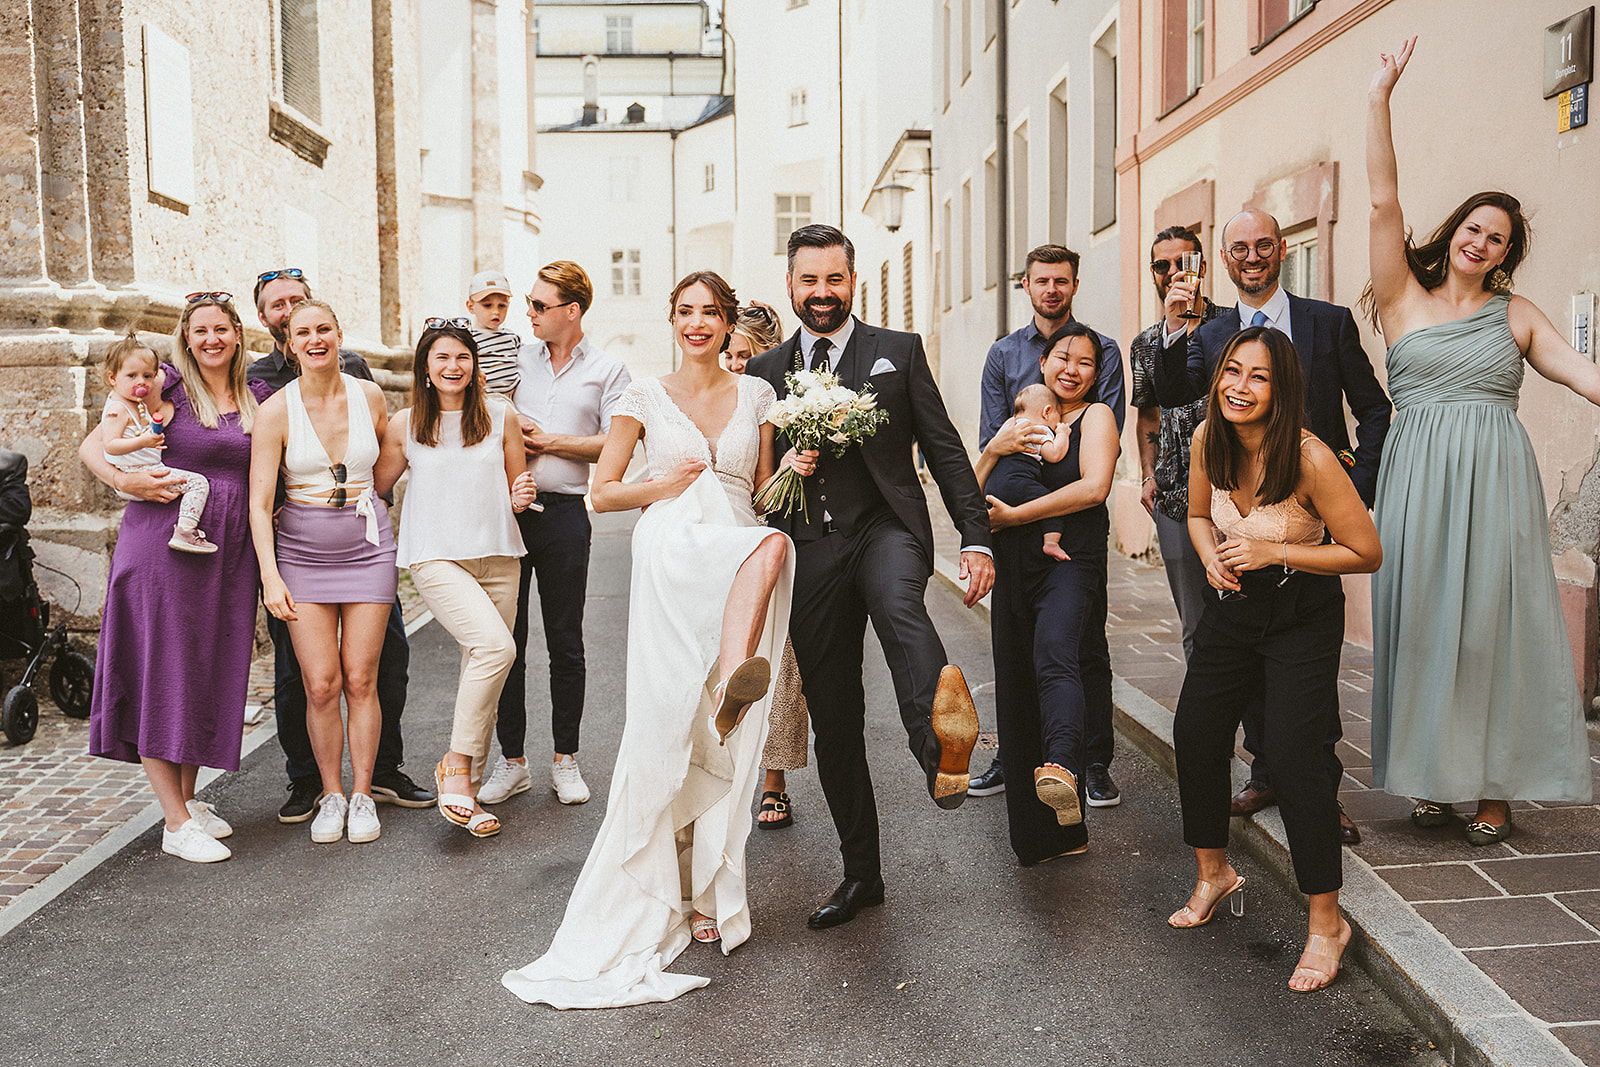 Gruppenfoto von der Hochzeitsgesellschaft in der Altstadt in Innsbruck